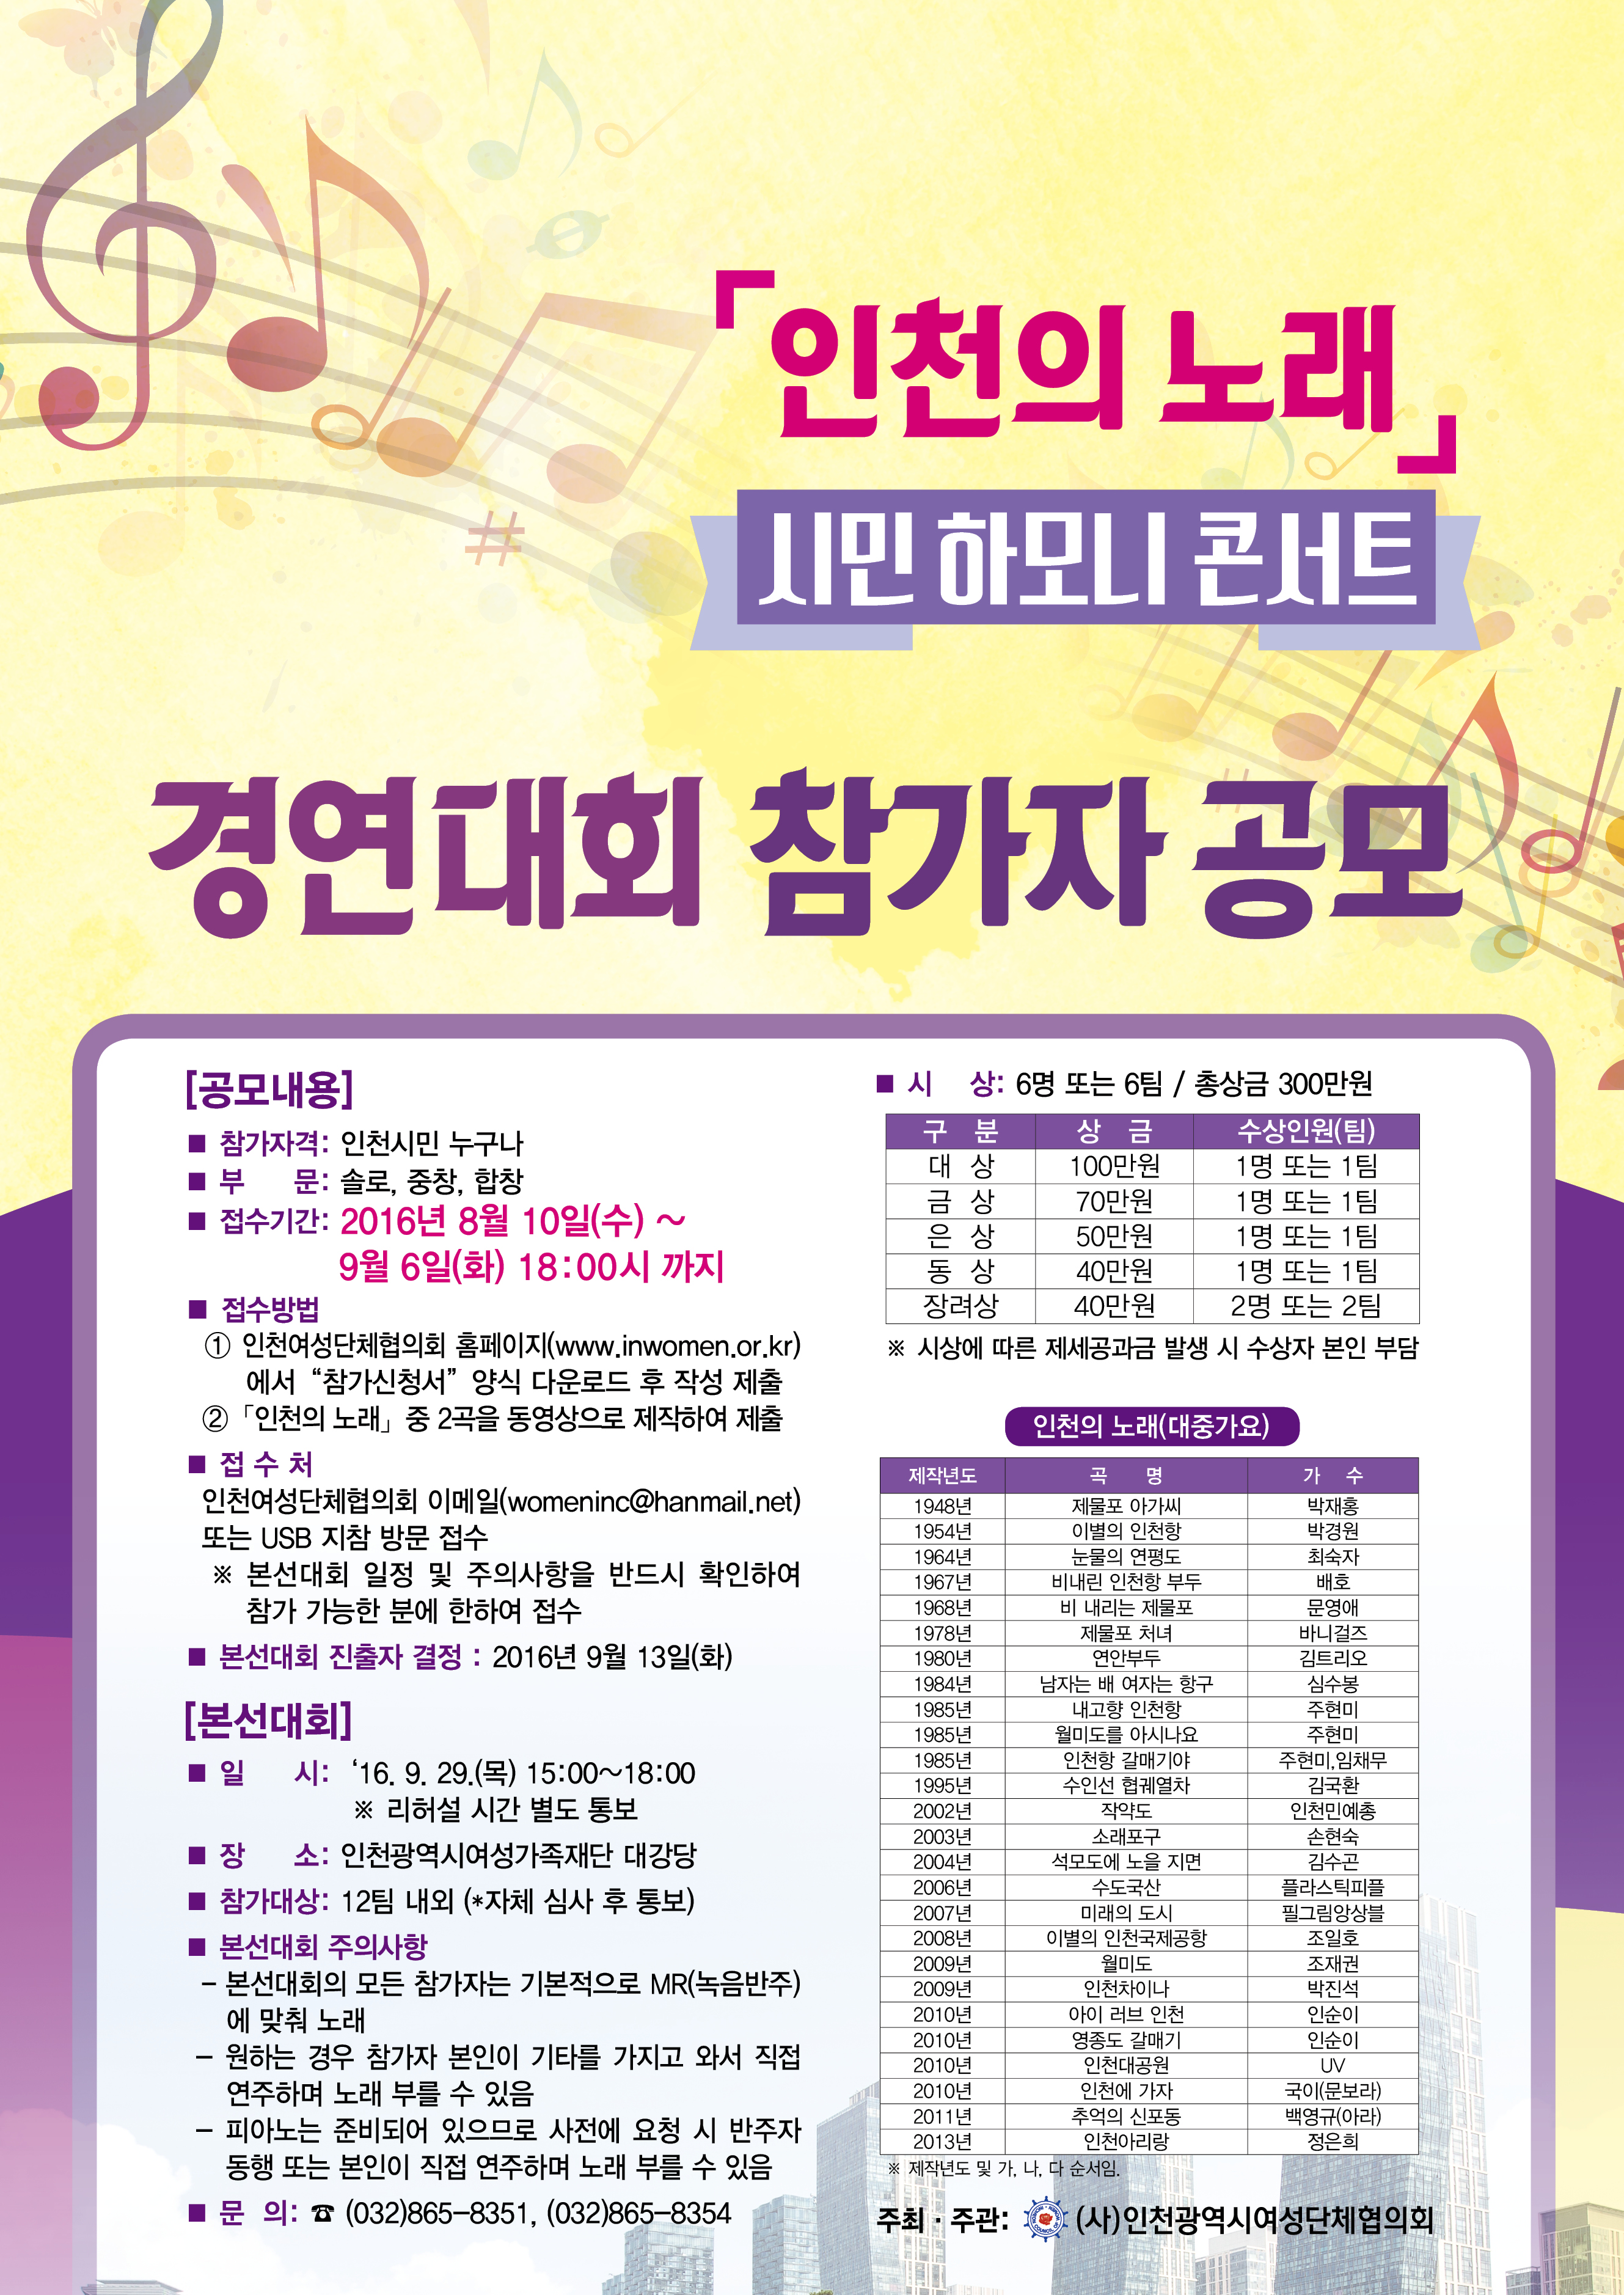 인천의노래 시민하모니 콘서트 경연대회 참가자 공모 포스터